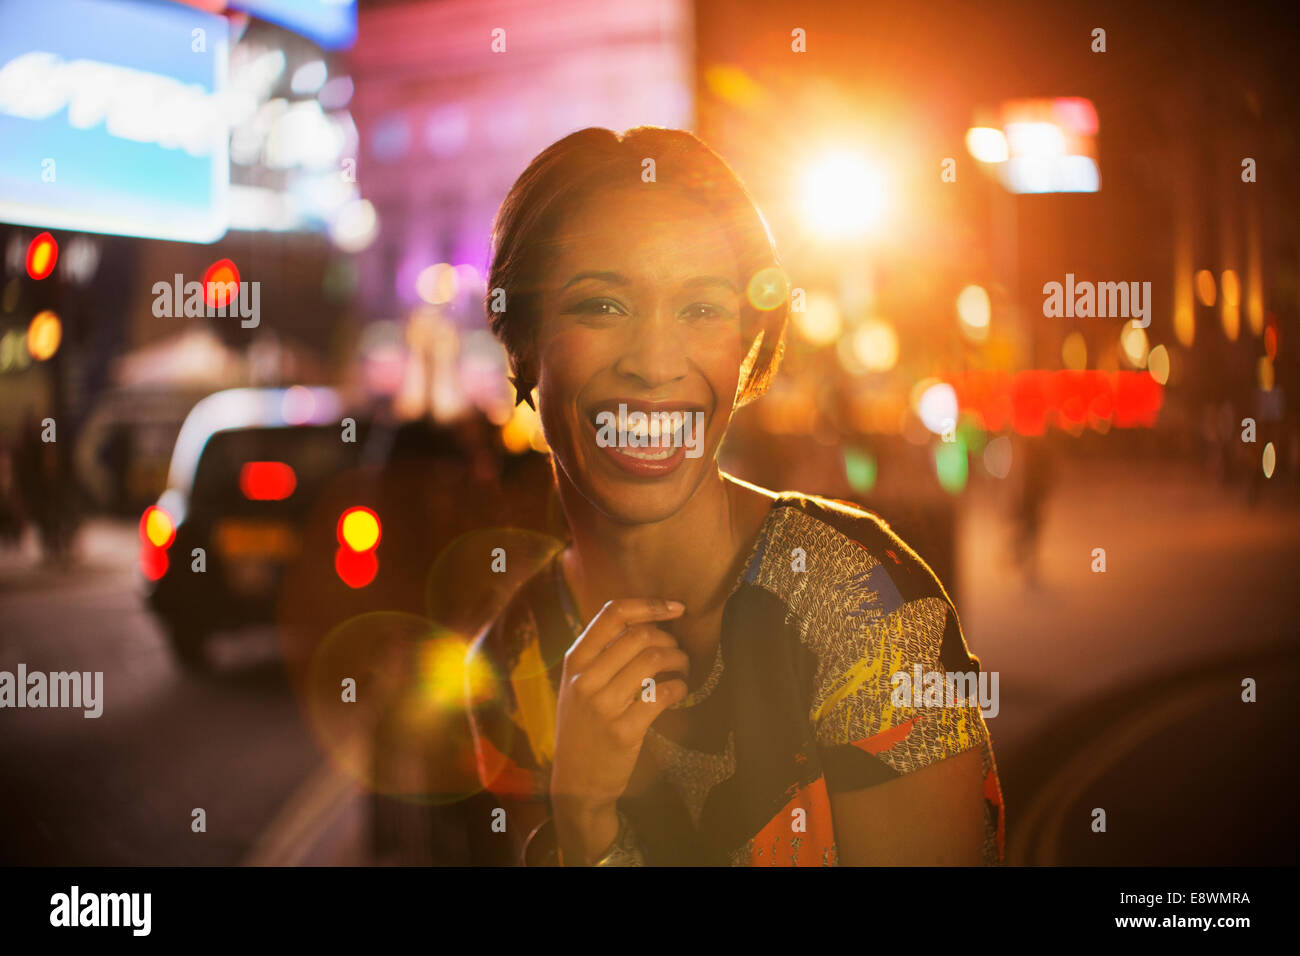 Frau lächelnd auf Stadtstraße in der Nacht Stockfoto